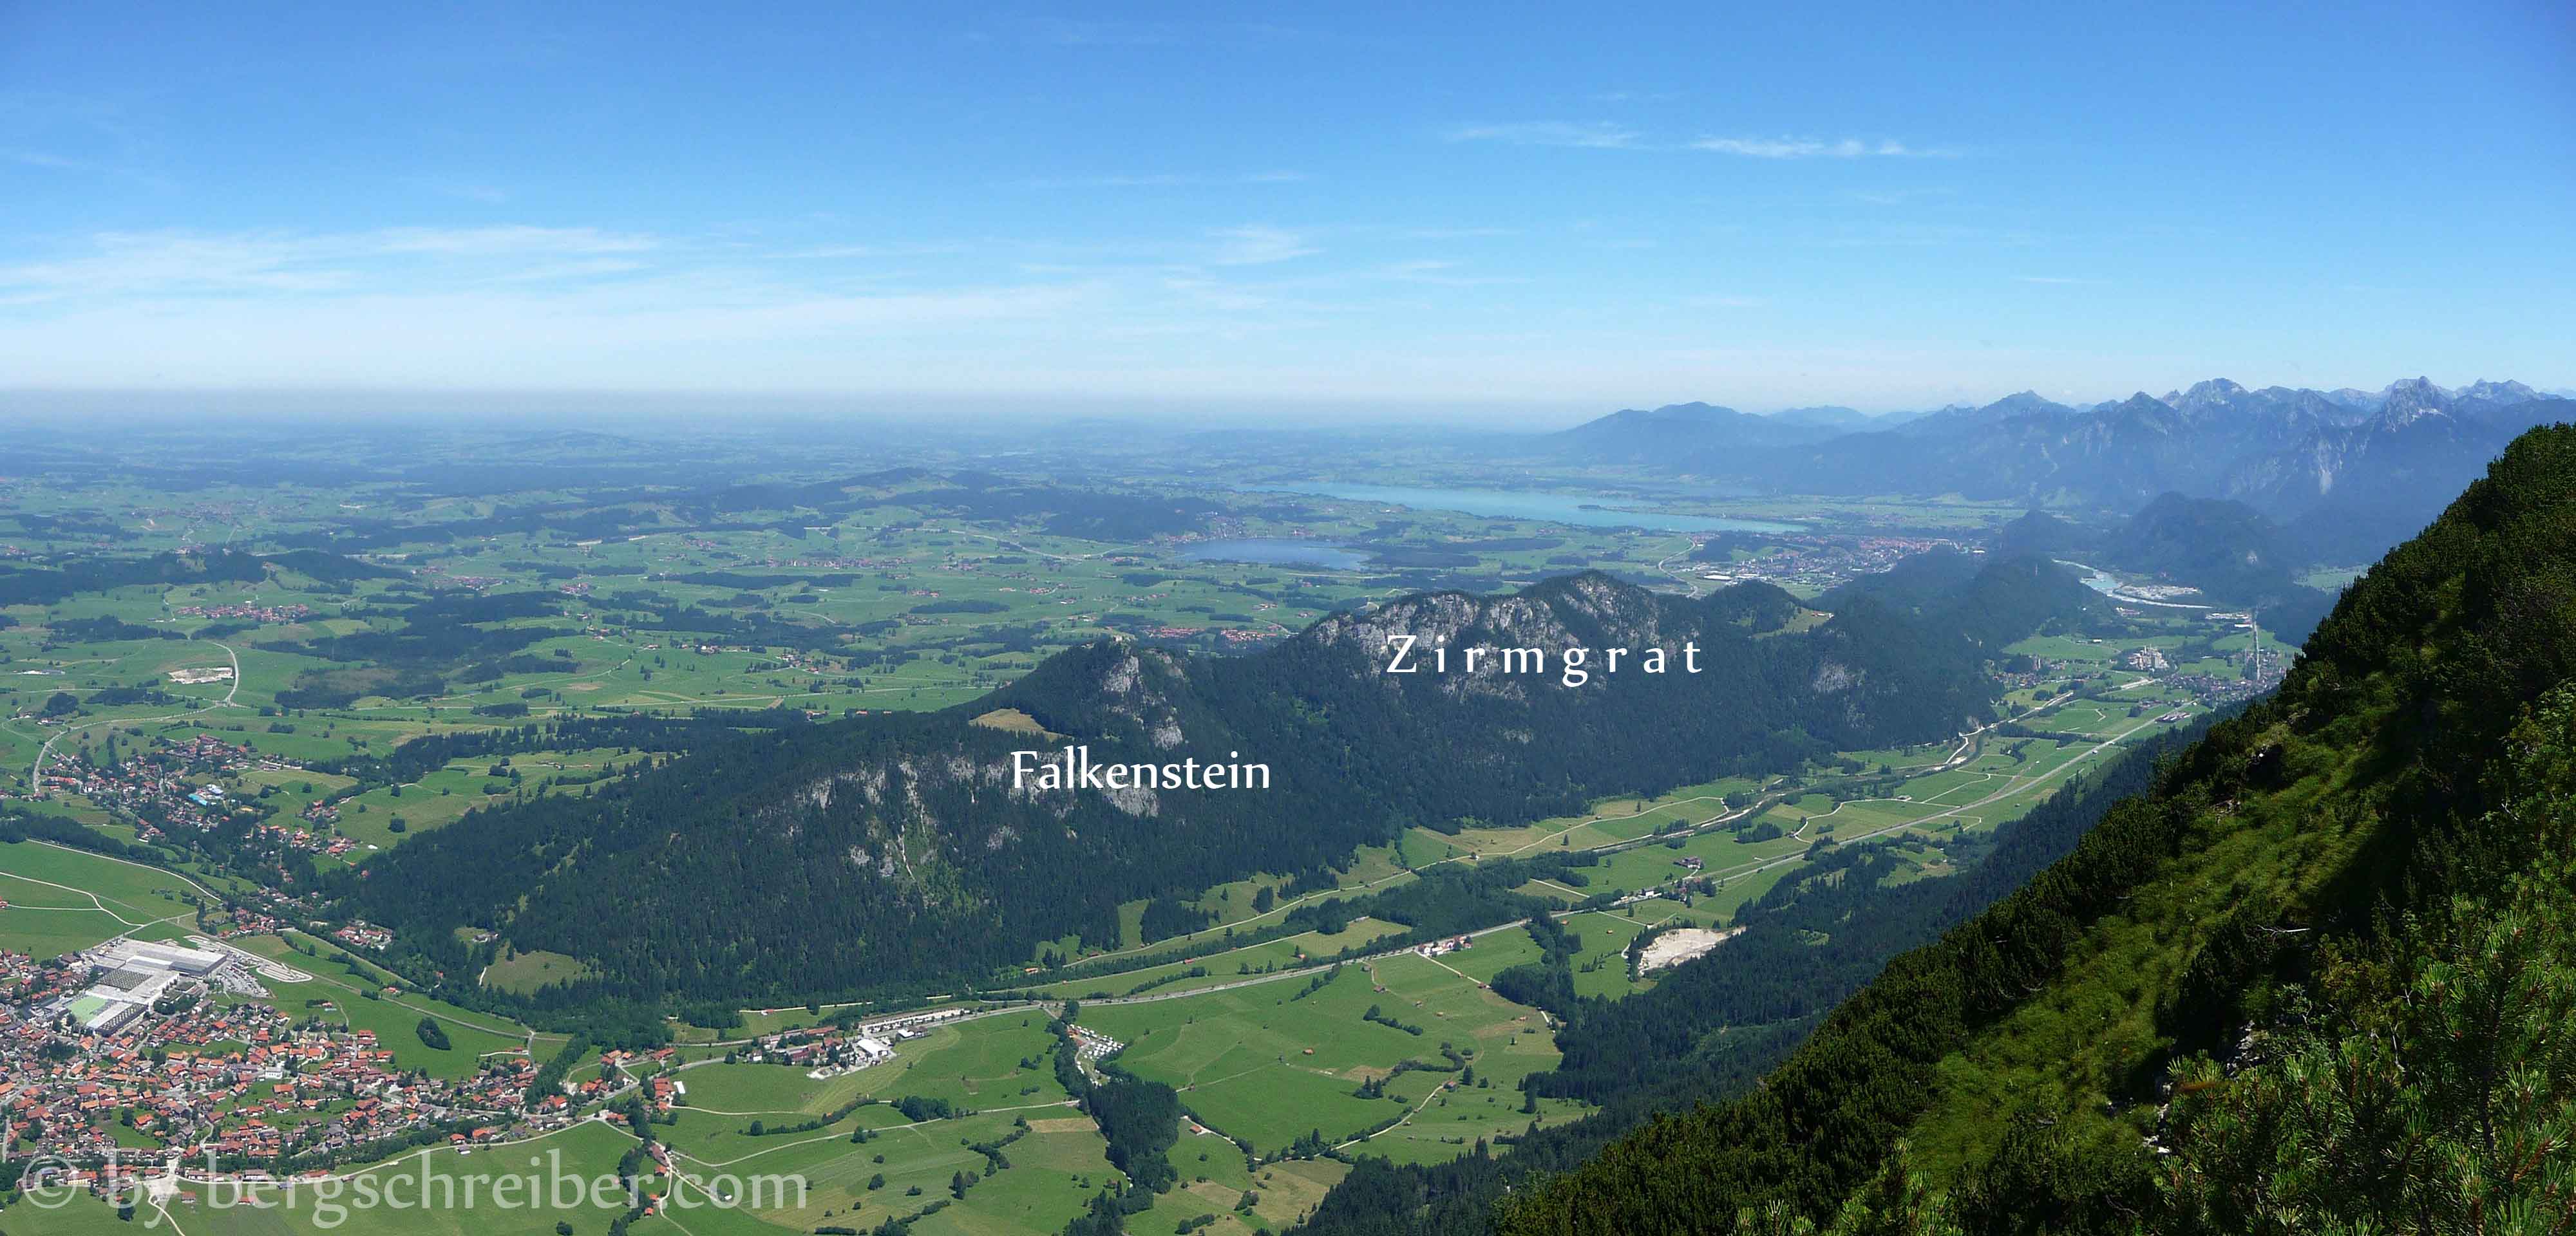 Zirmgrat, gesehen vom Breitenberg, im Tal liegt die Ortschaft Pfronten, hinter dem Zirmgrat erstreckt sich das Seenland bei Füssen im Allgäu. Den Horizont begrenzen die Ammergauer Alpen